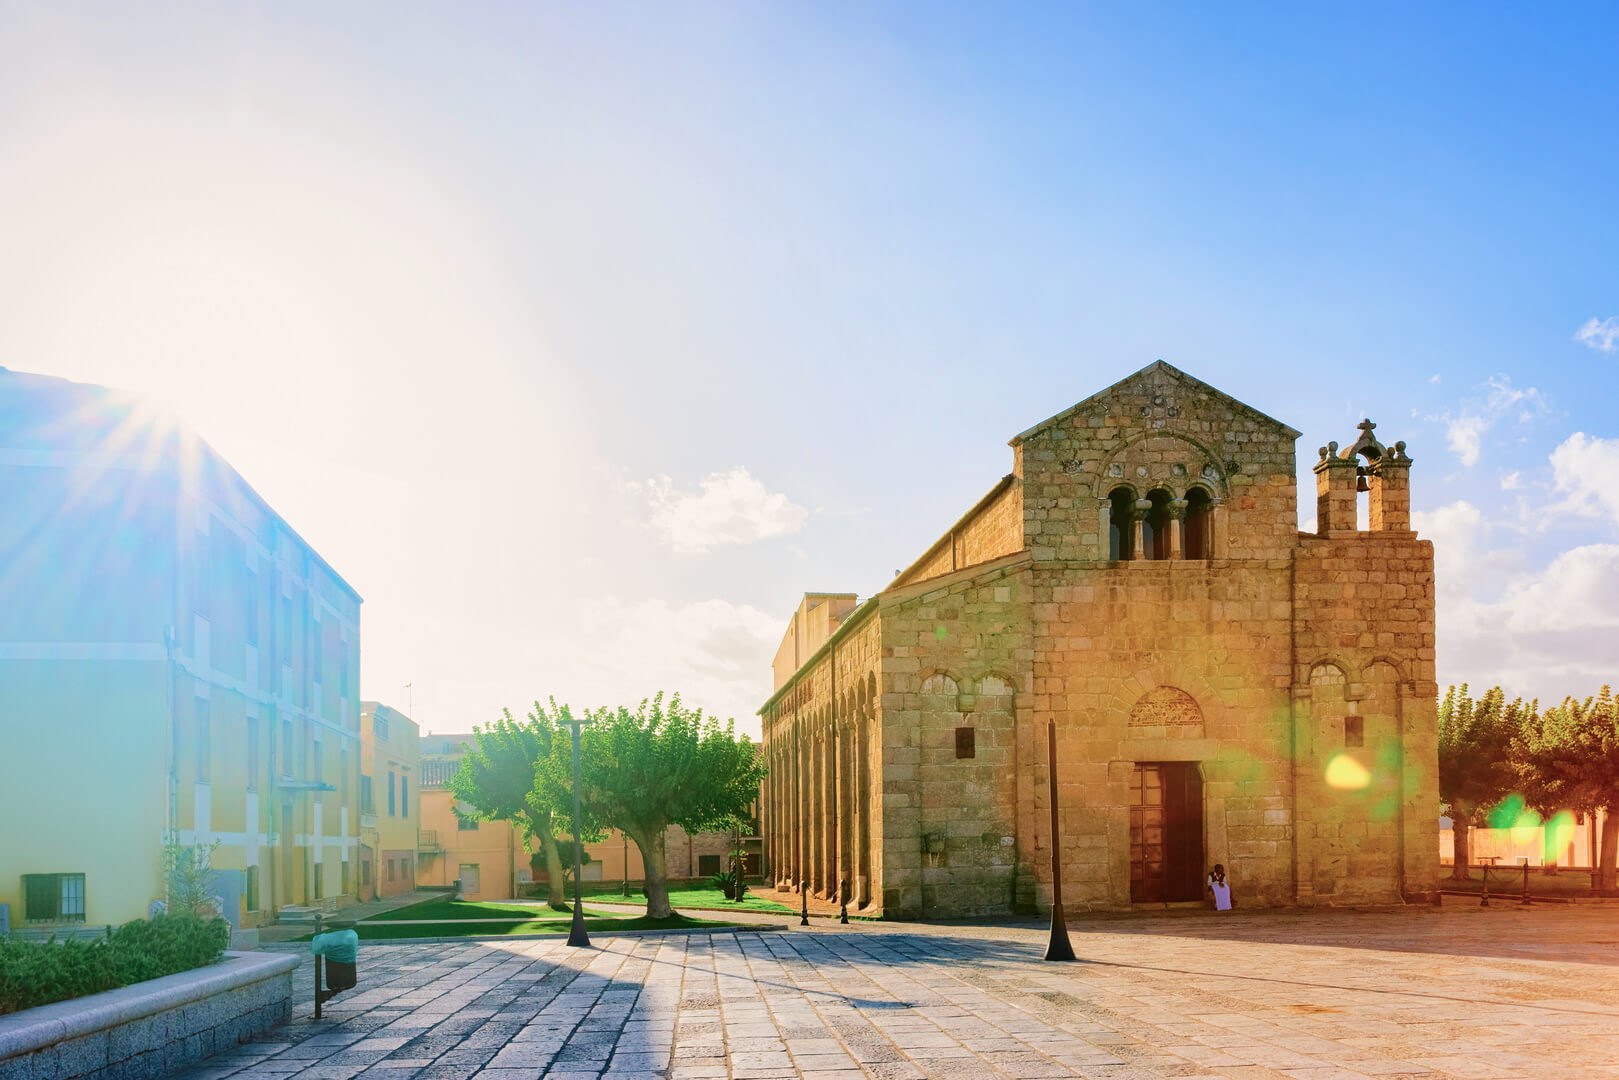 Basilica di San Simplicio nella città vecchia di Olbia sull'isola di Sardegna in Italia. Piazza con lanterne di strada e cattedrale nell'isola di Sardegna. Cielo blu e luce del sole